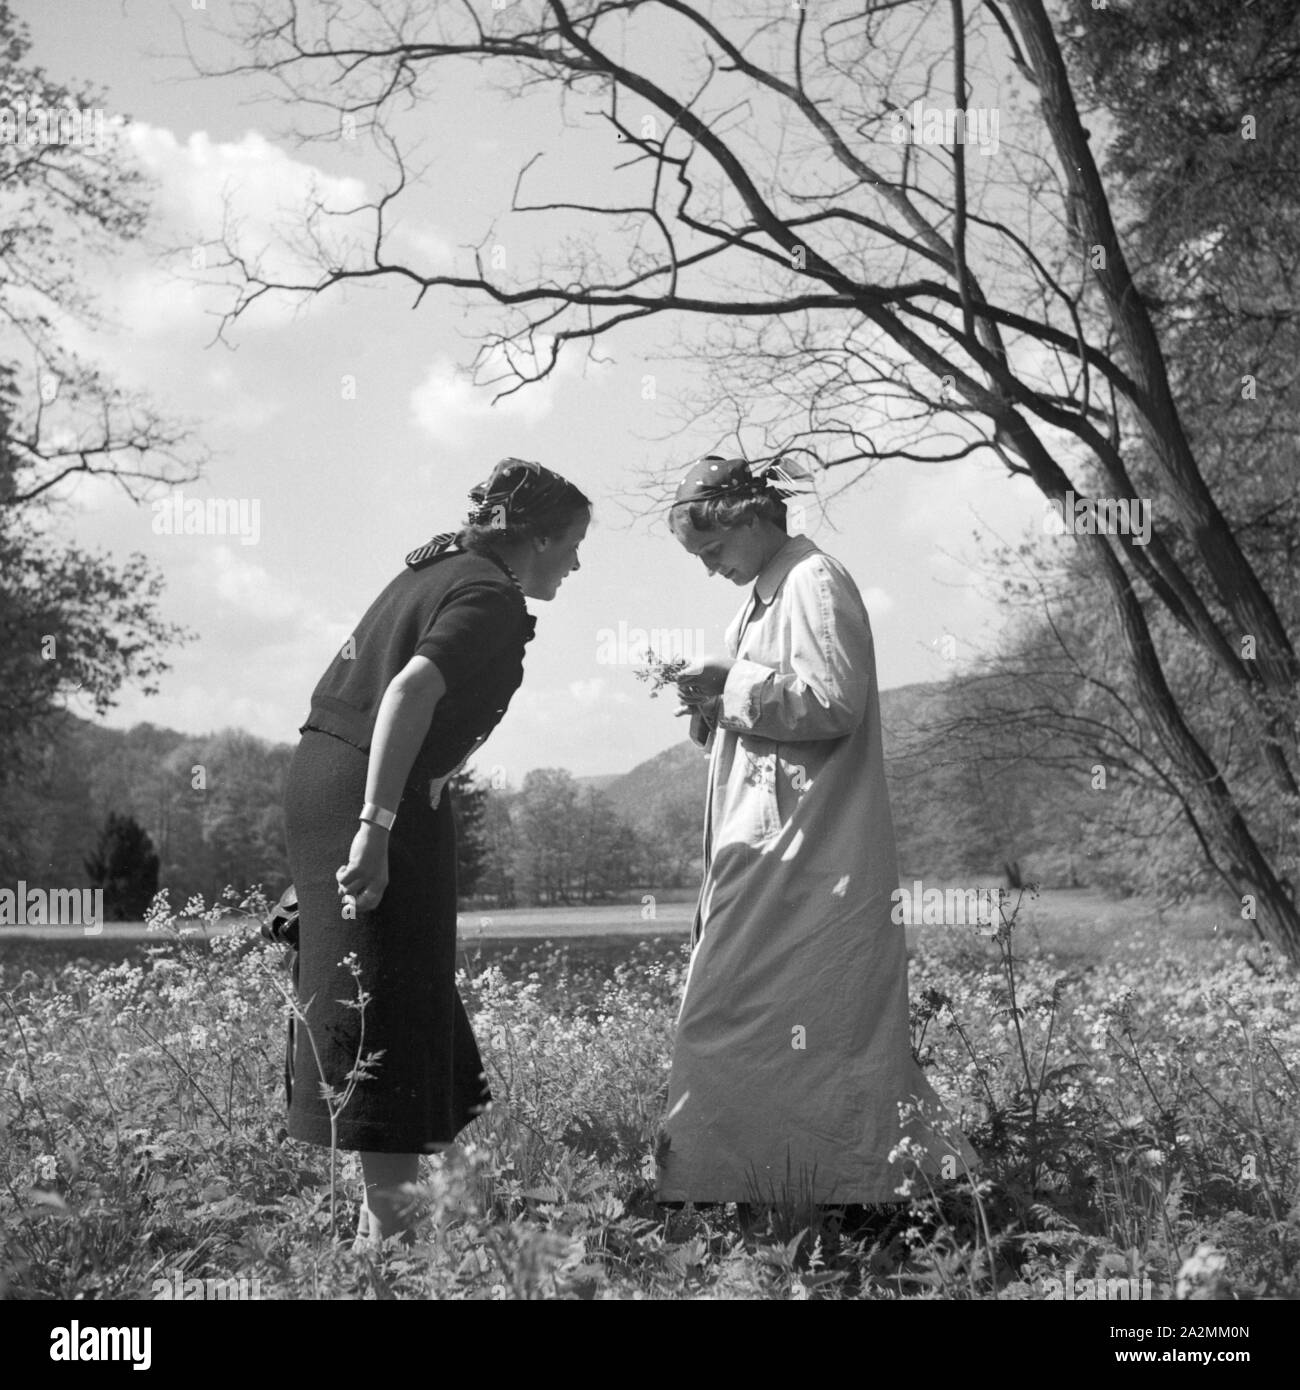 Zwei Frauen verwalten sich auf einer Blumenwiese, Deutschland 1930 er Jahre. Deux femmes sur une pelouse, Allemagne 1930. Banque D'Images